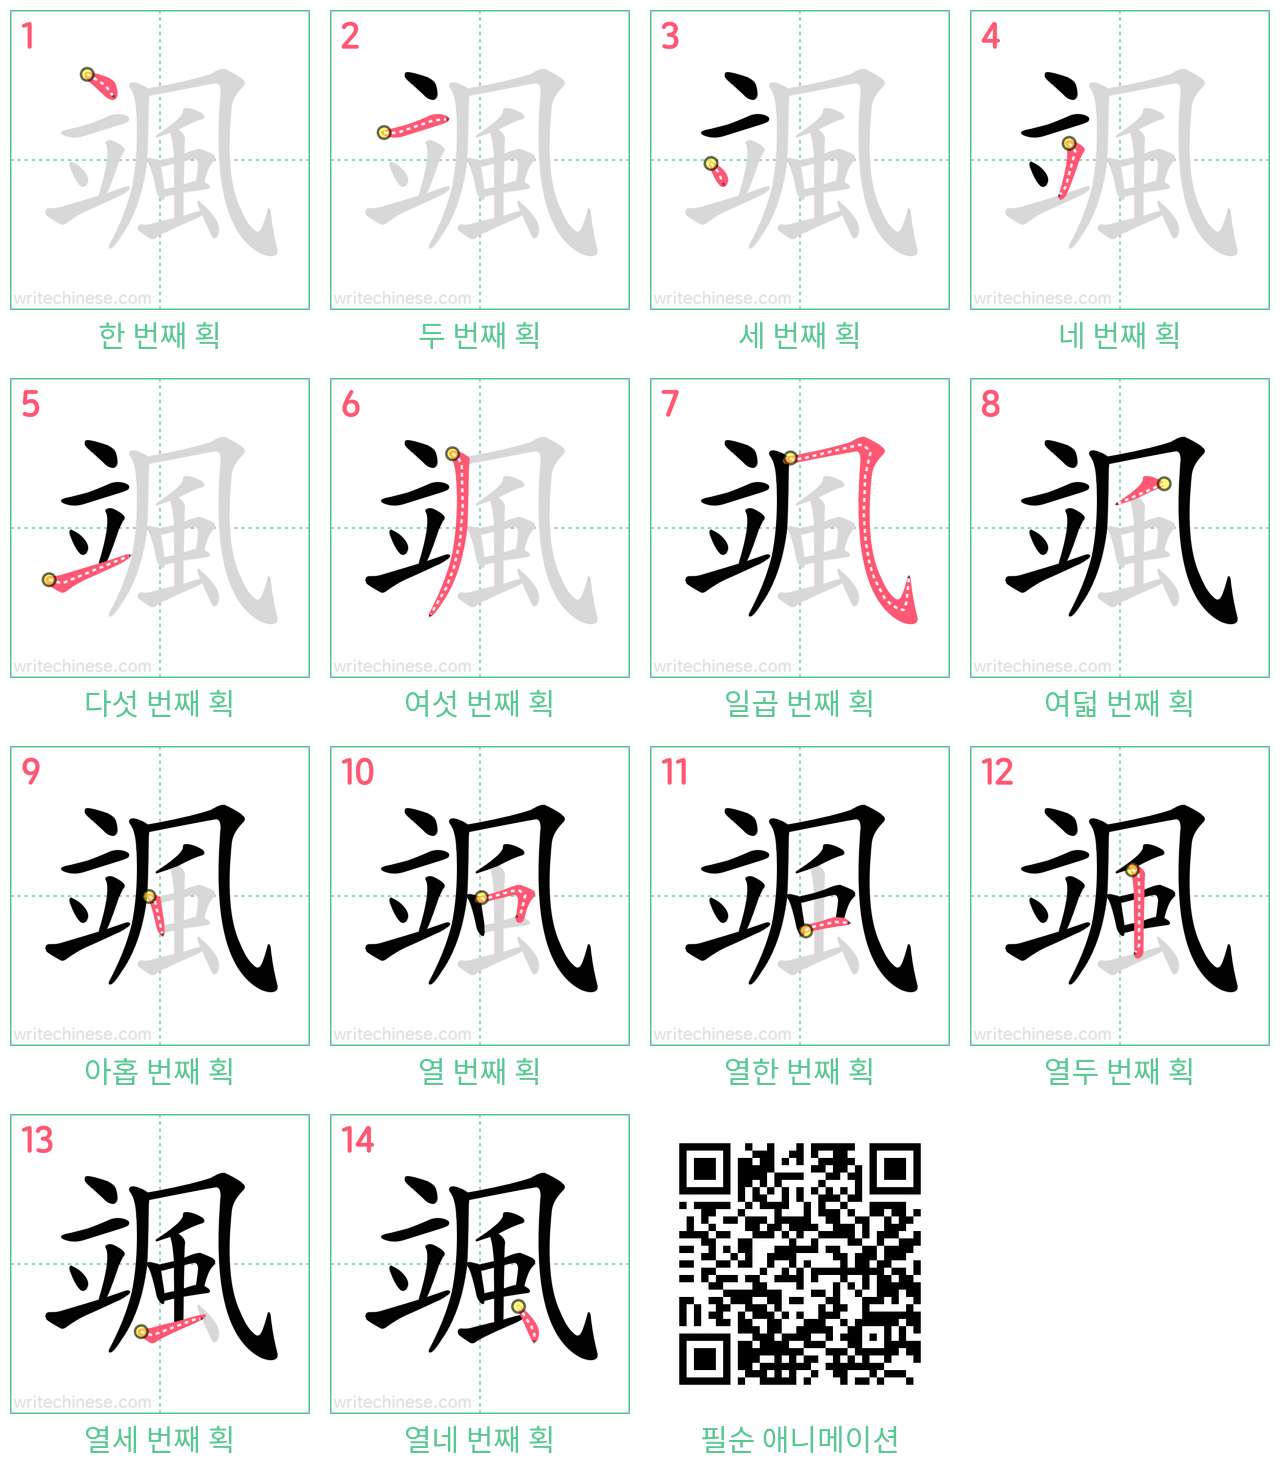 颯 step-by-step stroke order diagrams